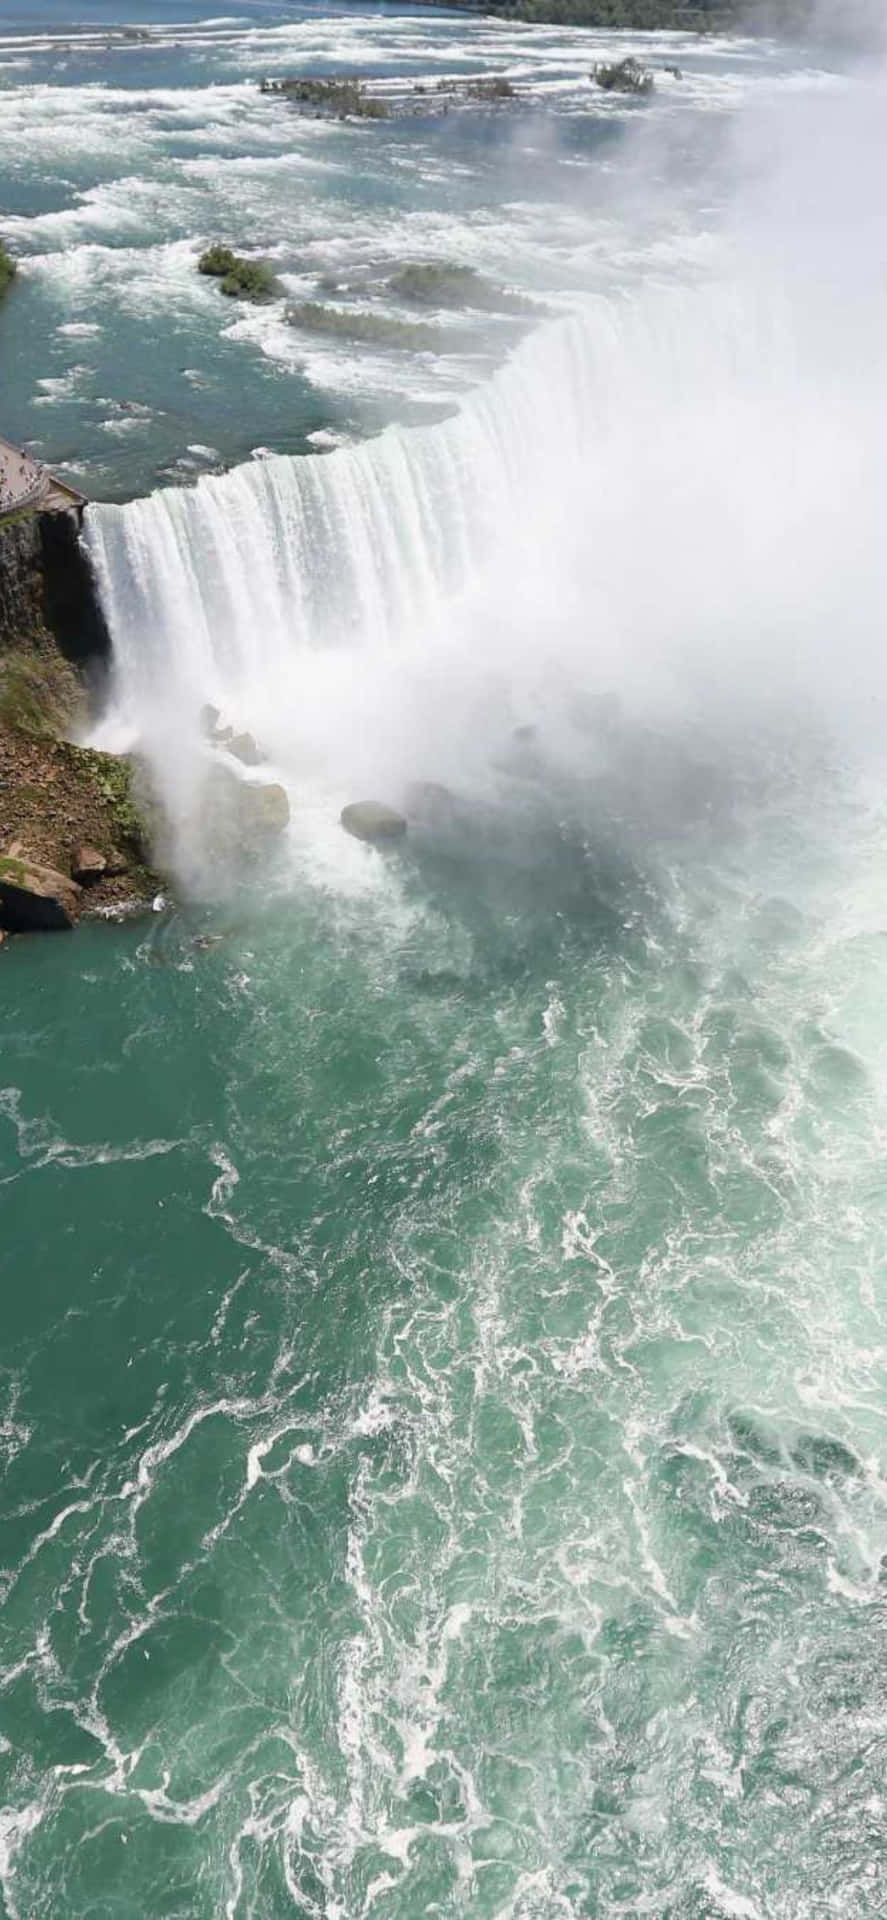 Iphonex Bakgrundsbild Med Stenig Niagara Falls.